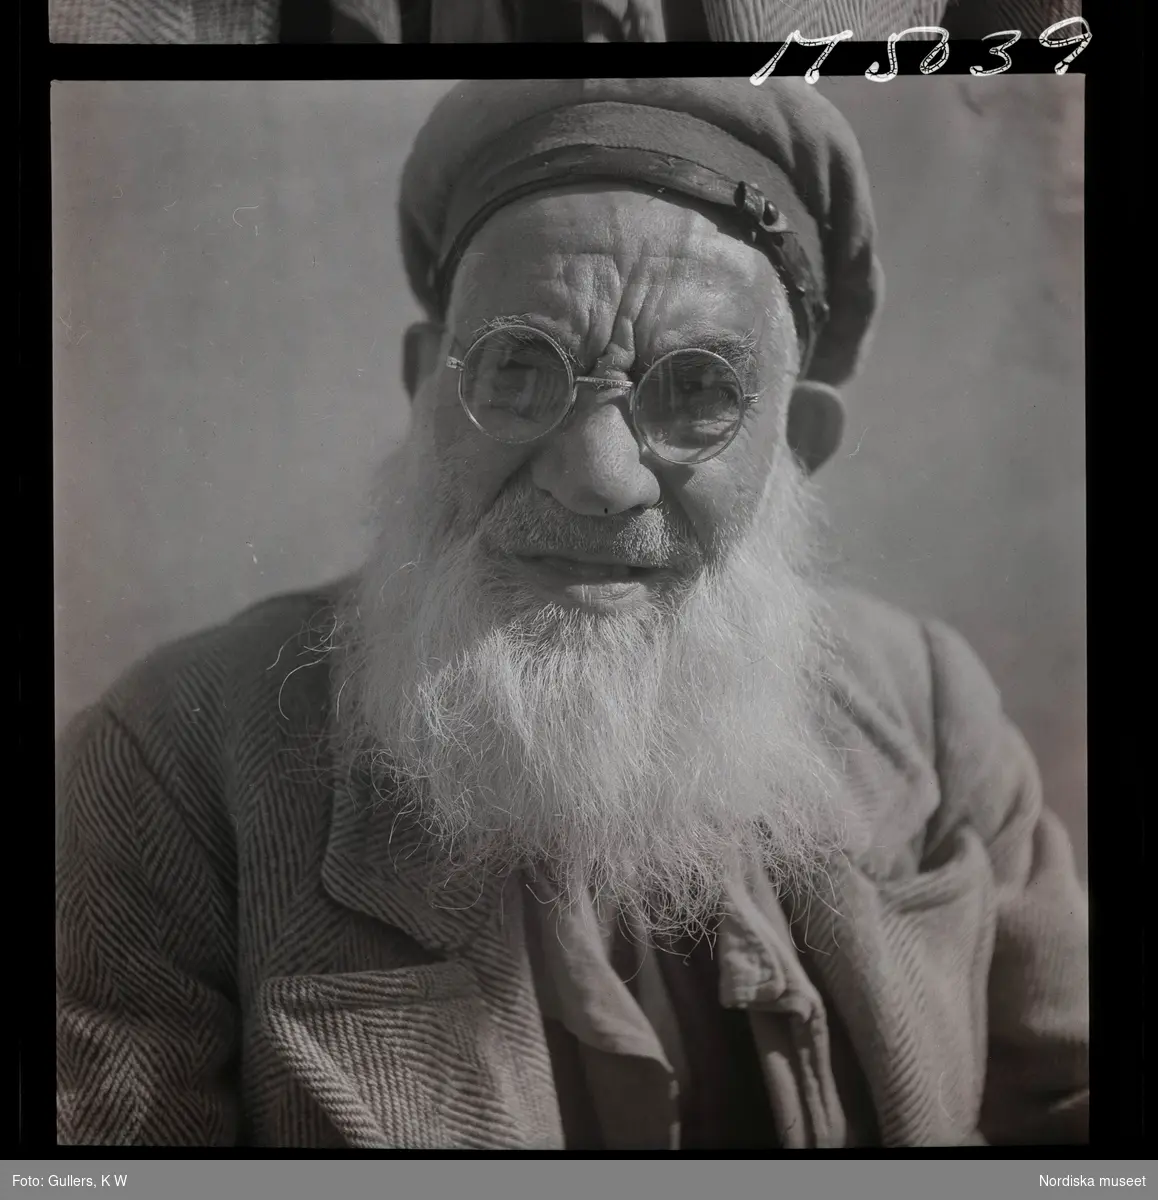 1717/L Istanbul allmänt. Porträtt av en äldre man i runda glasögon.